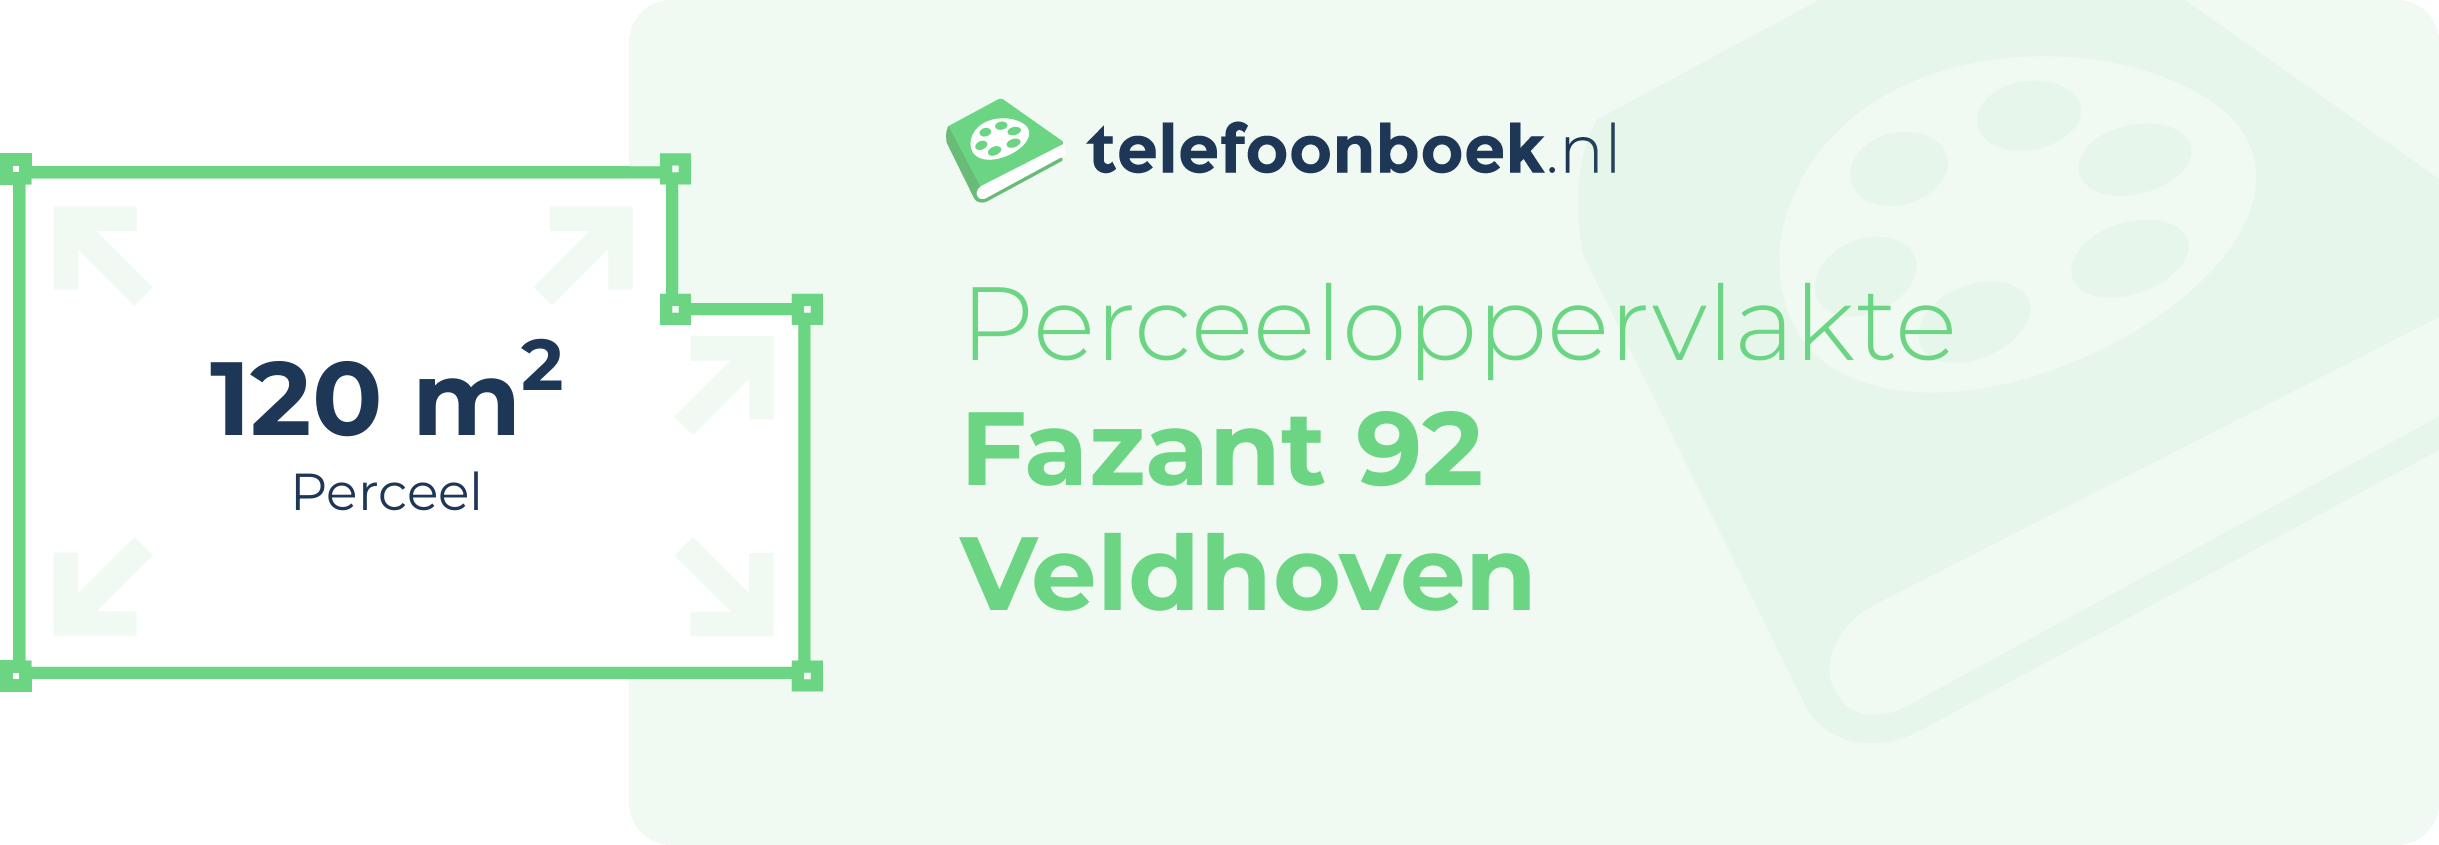 Perceeloppervlakte Fazant 92 Veldhoven